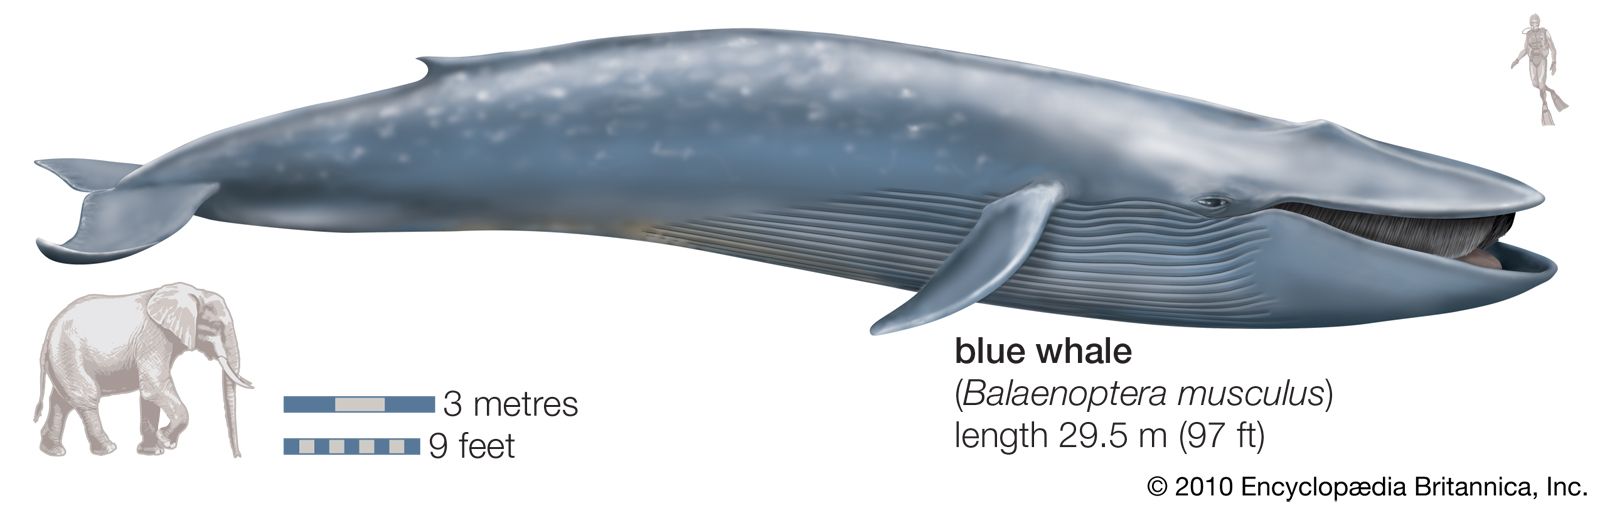 Trái tim của cá voi xanh có thực sự to bằng một chiếc ô tô không? - Ảnh 1.